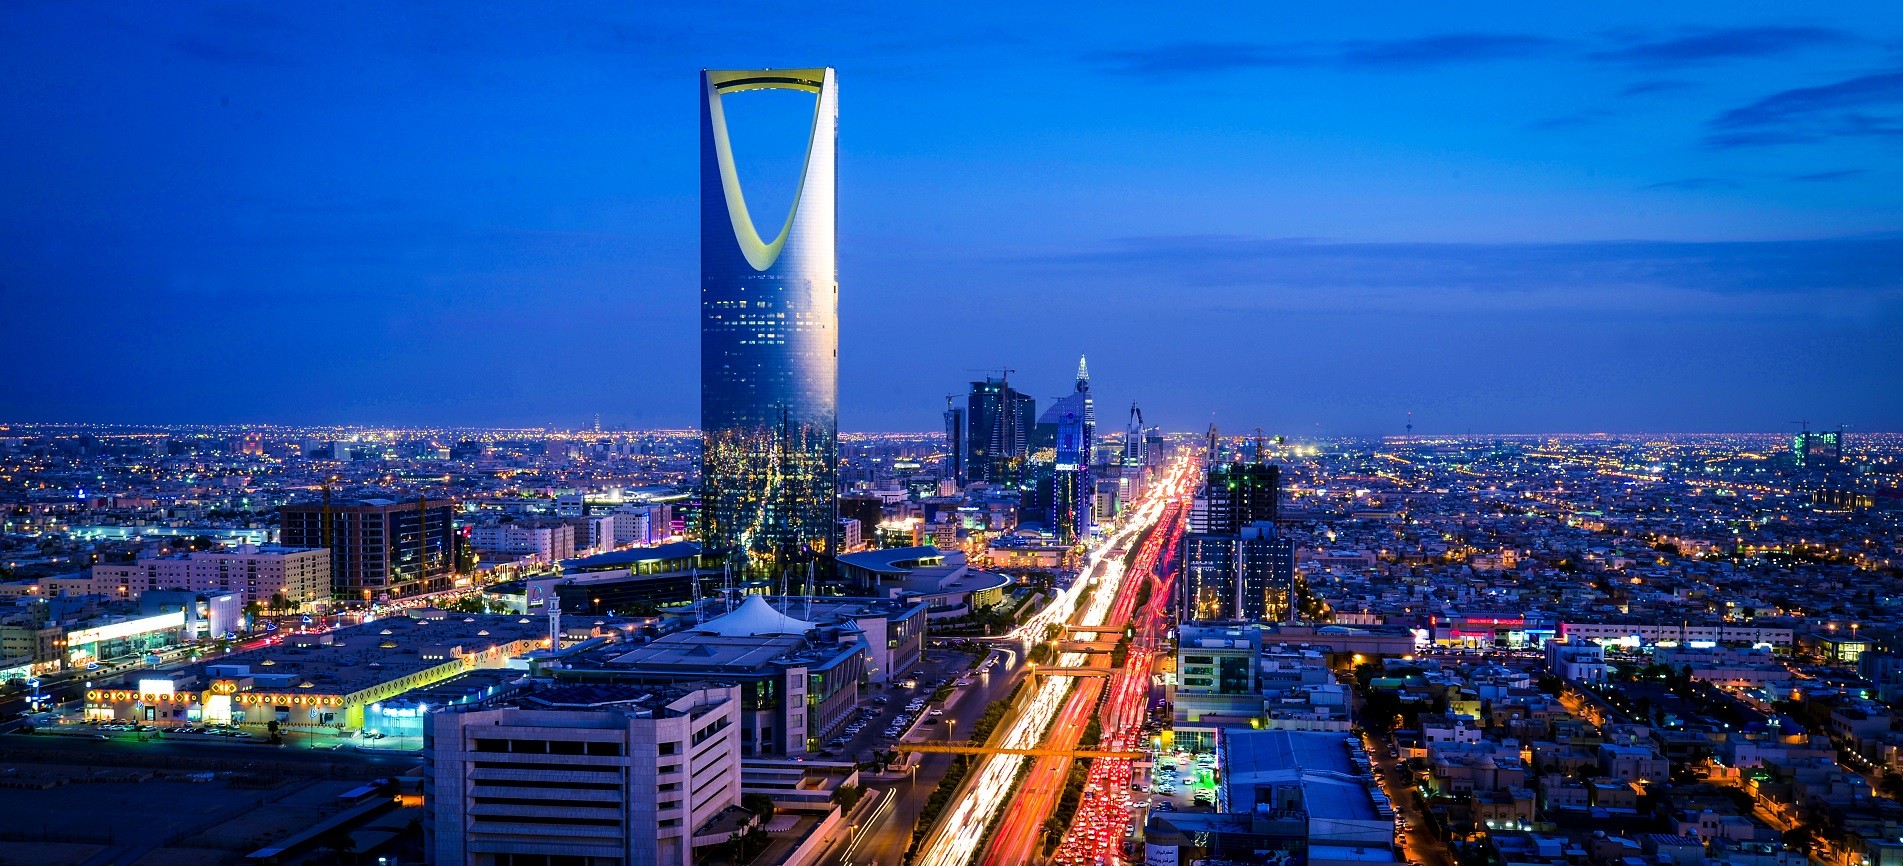 الرياض تستضيف أكبر بازار نسائي عربي من خلال فعالية "أنا عربية" 